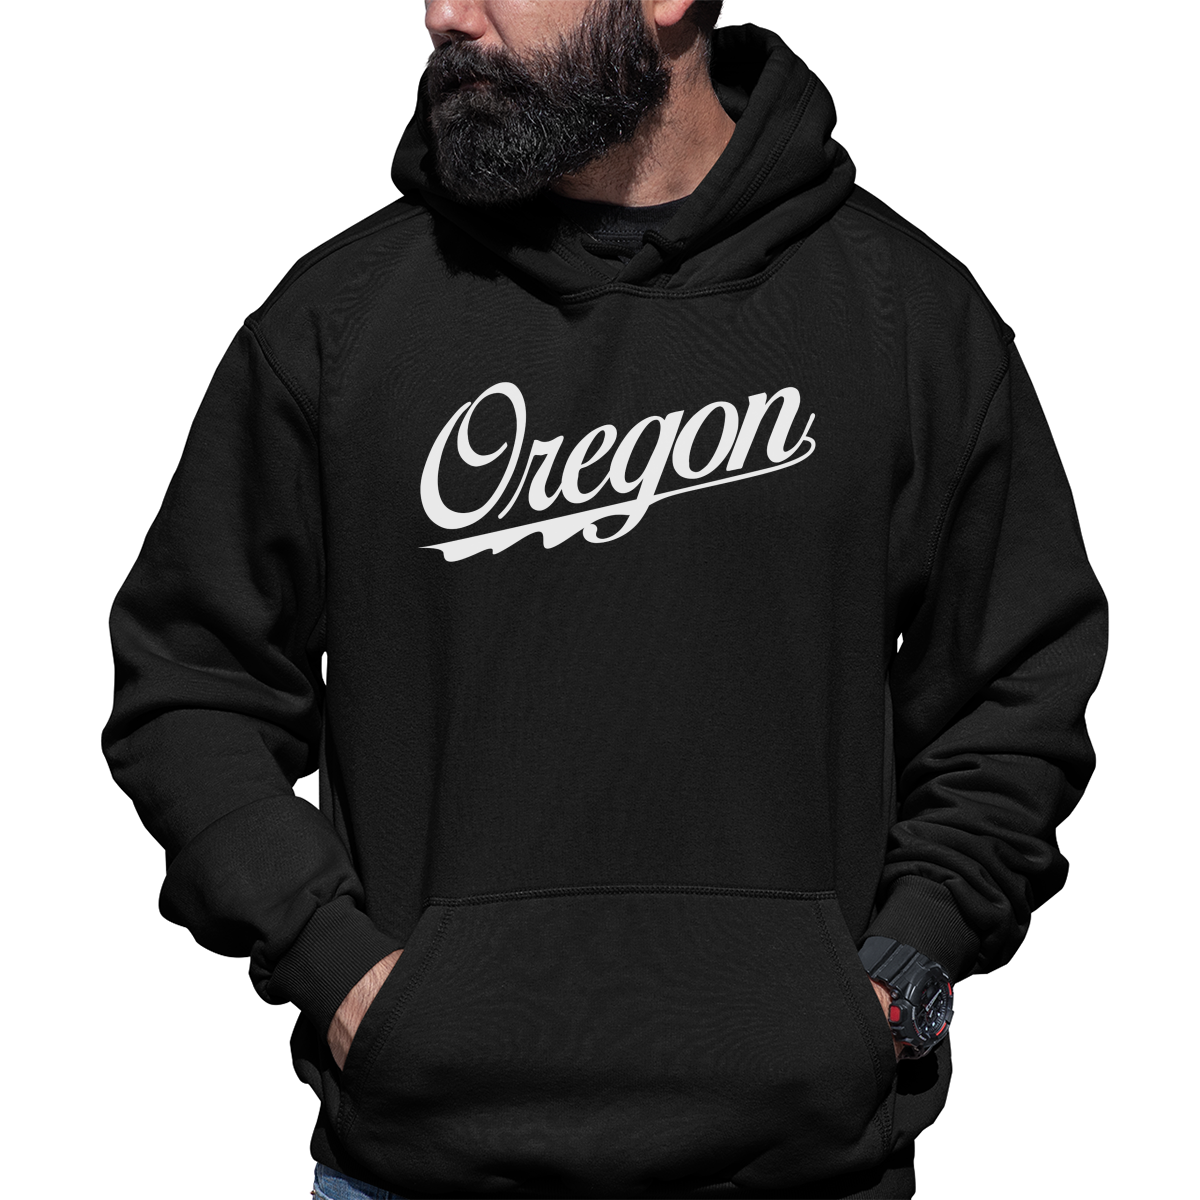 Oregon Unisex Hoodie | Black